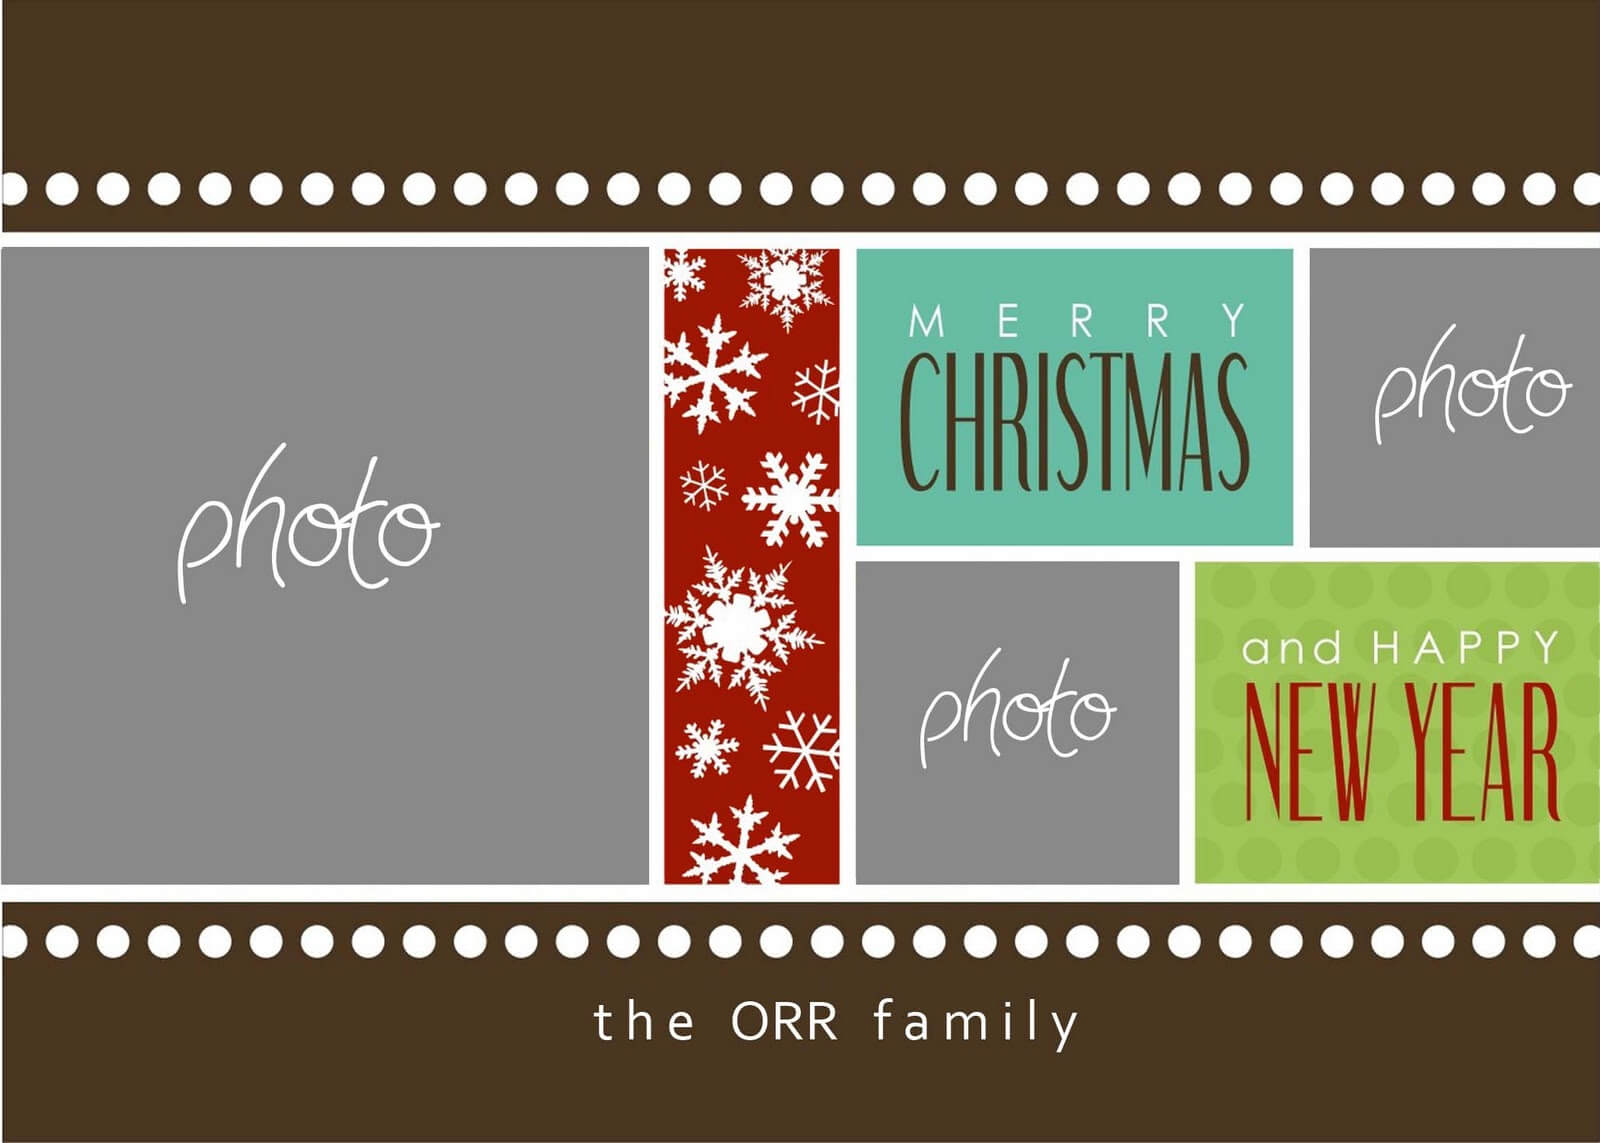 Christmas Cards Templates Photoshop ] – Christmas Card Intended For Christmas Photo Card Templates Photoshop